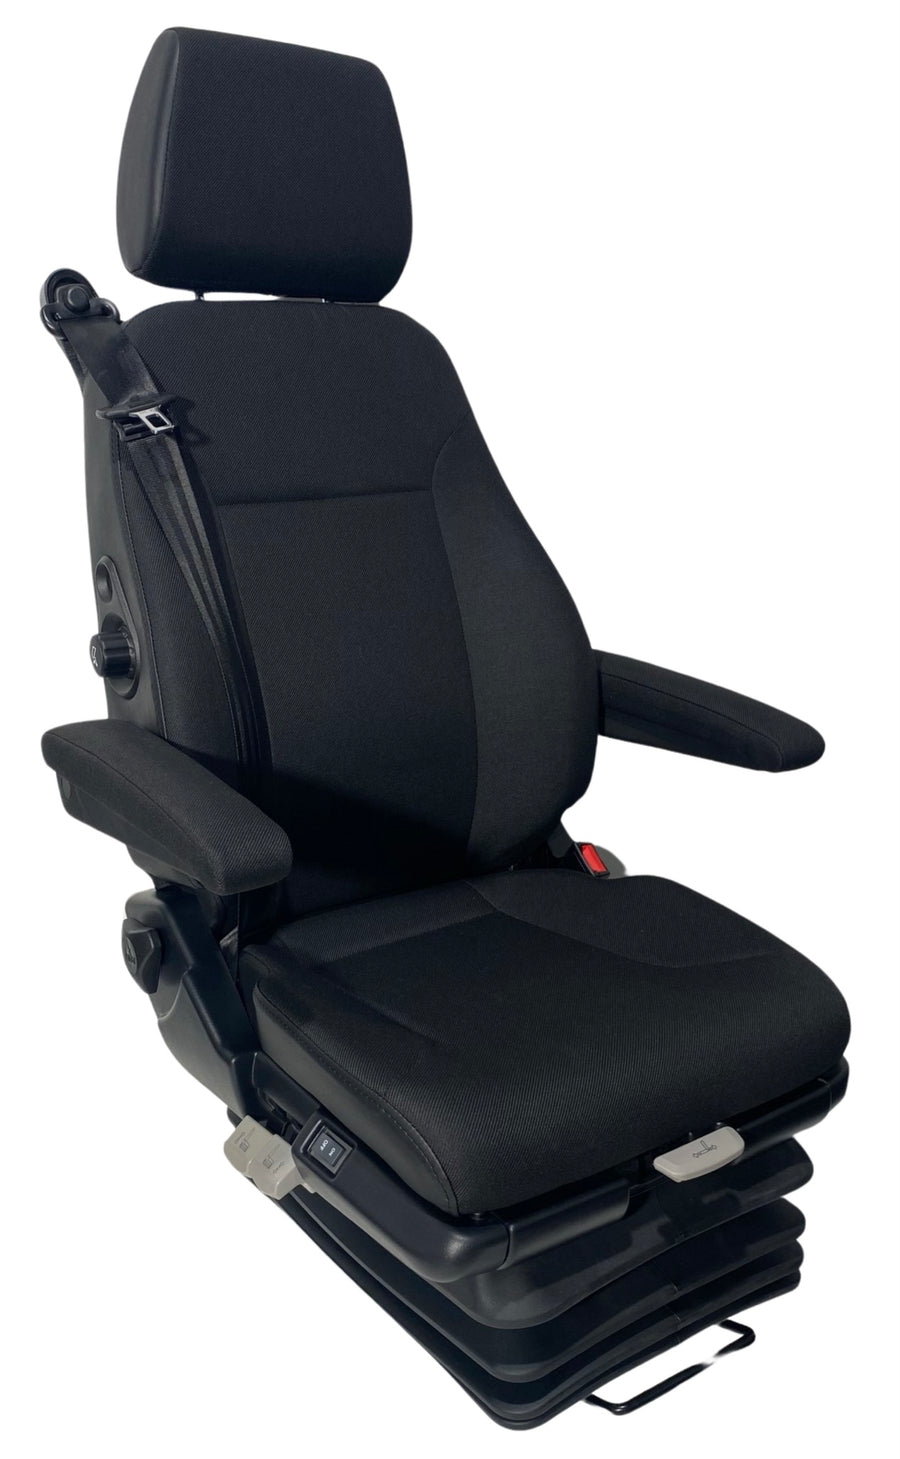 SJ2-150 L/R Air Suspension Seat